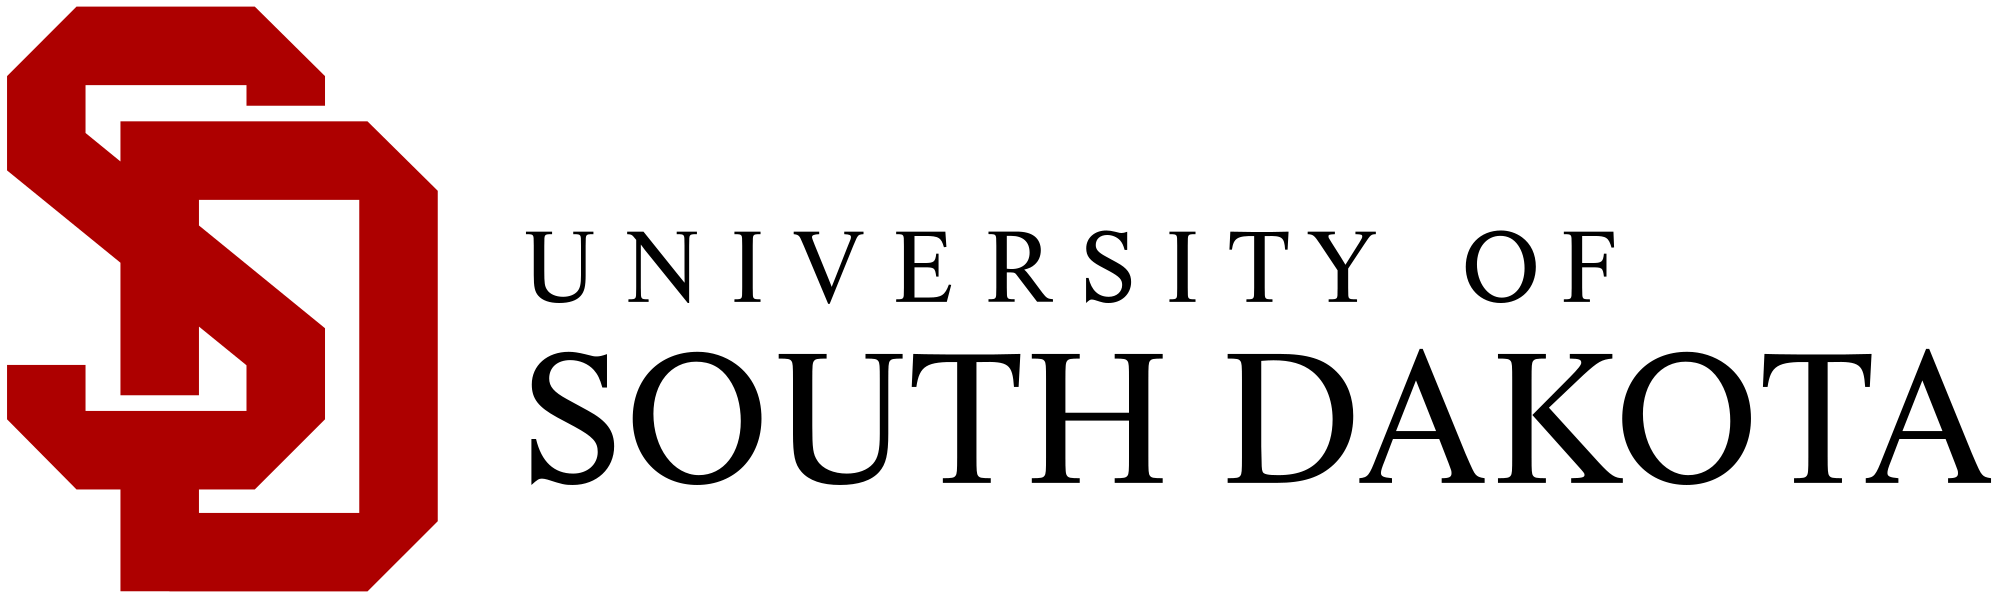 Dakota Logo - University of South Dakota logo.svg